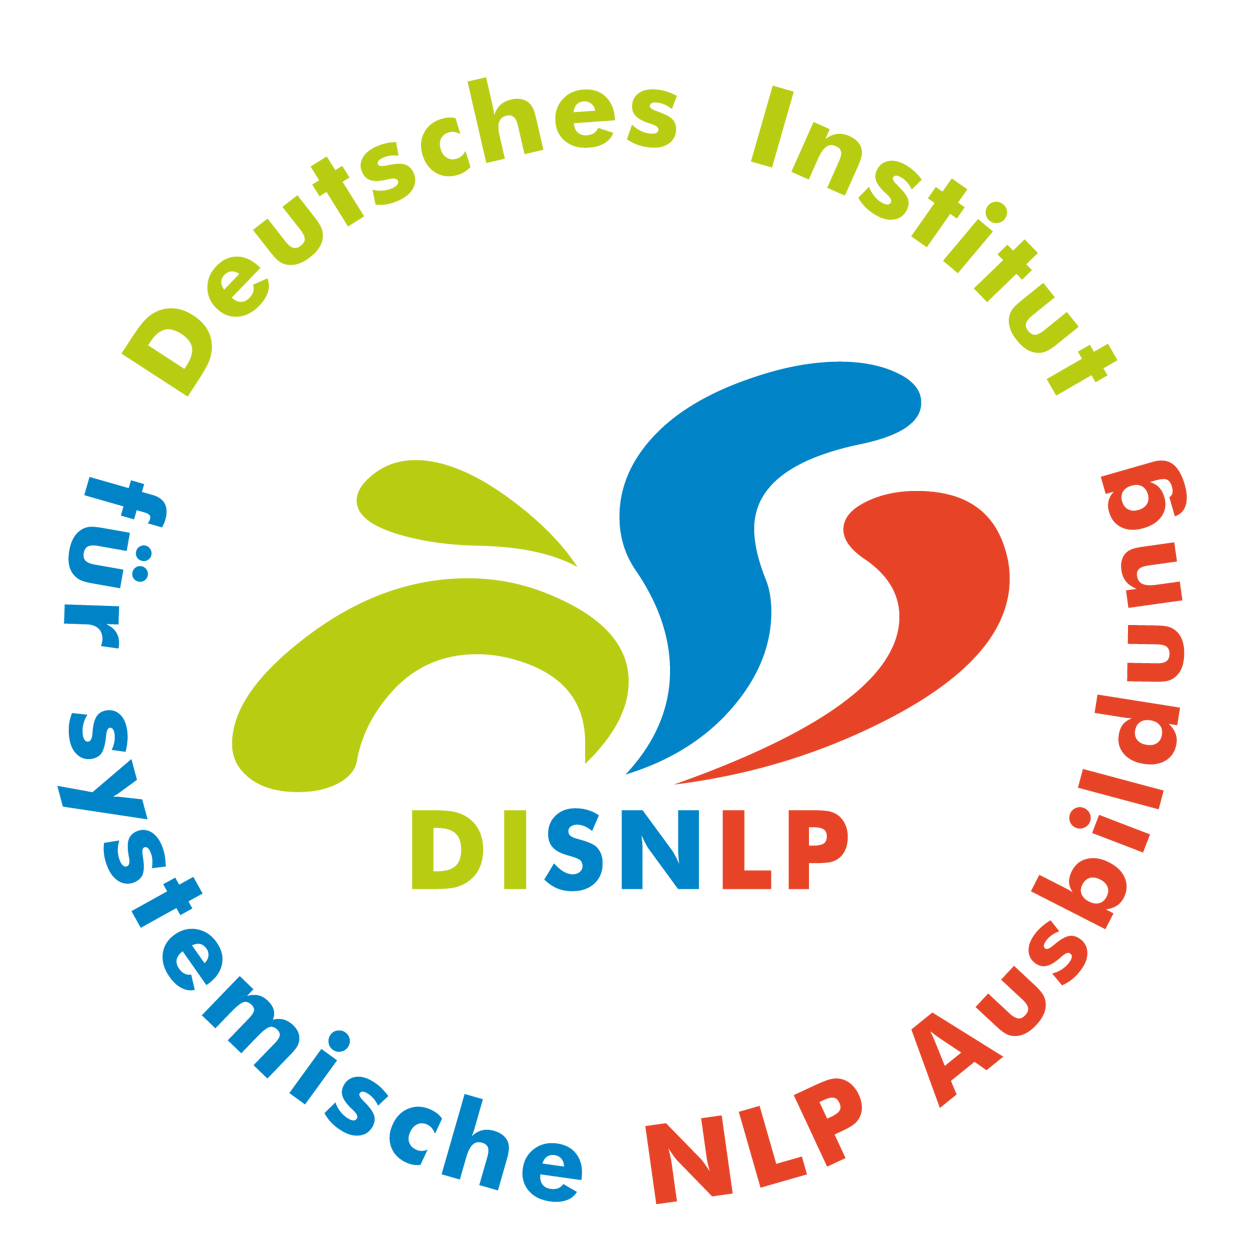 Seminar Selbstbewusstsein, Selbstvertrauen, Selbstwert, Selbstsicherheit stärken Heilbronn mit NLP Coaching Kurs für mehr Selbstbewusstsein